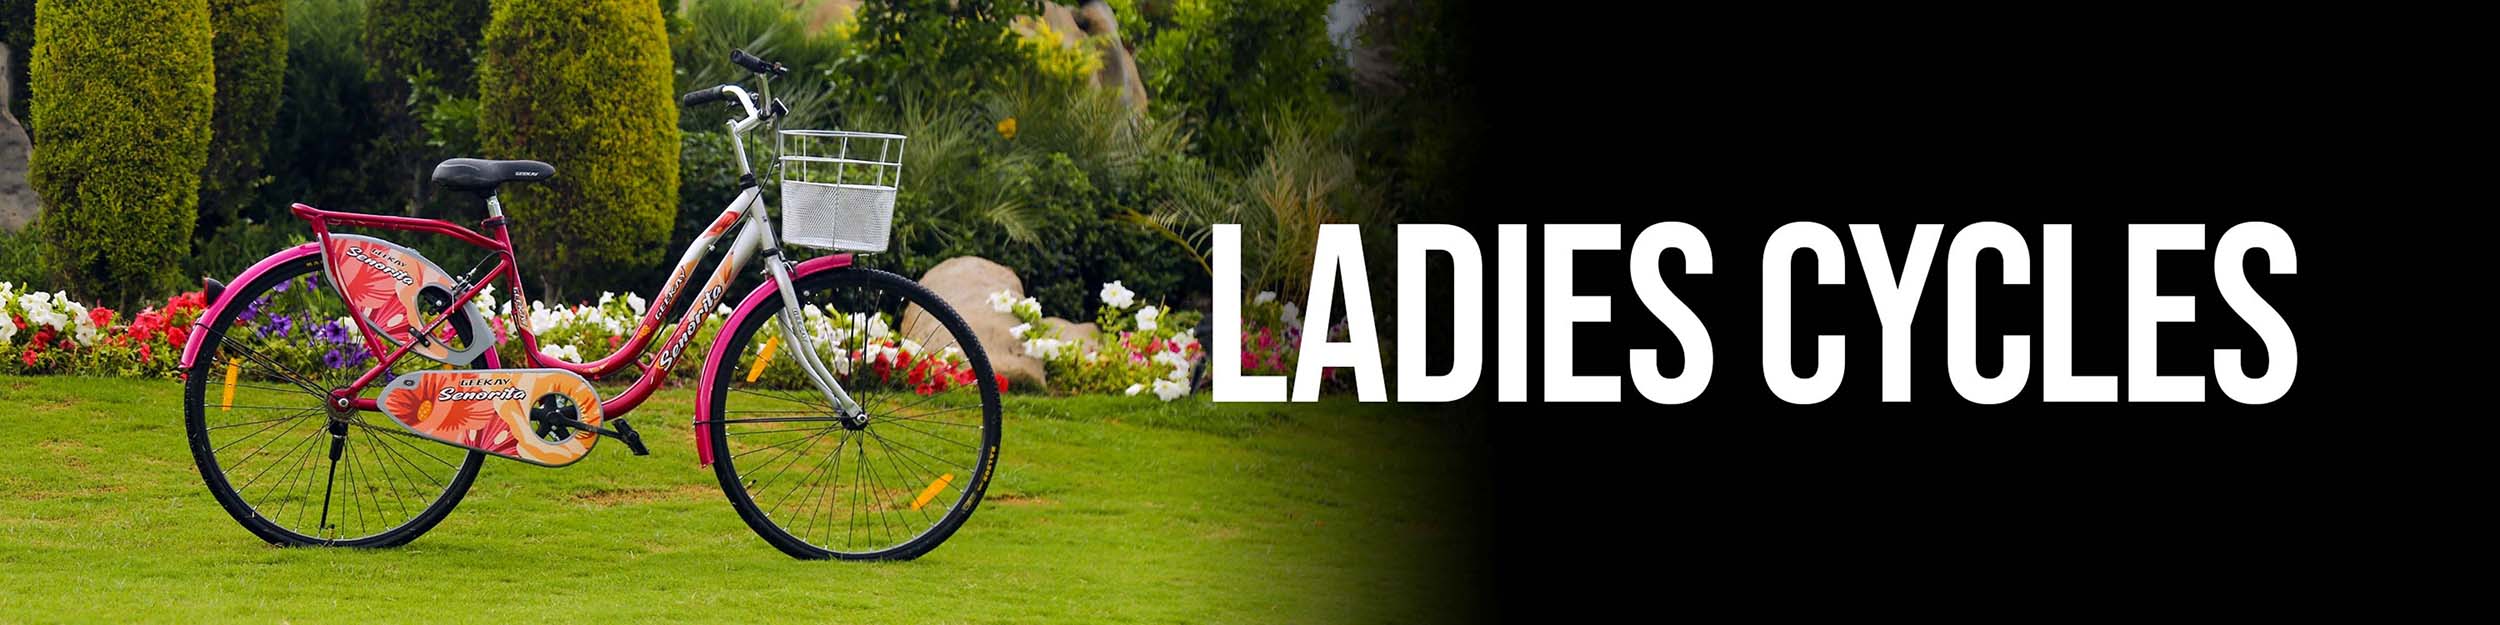 Ladies Cycles